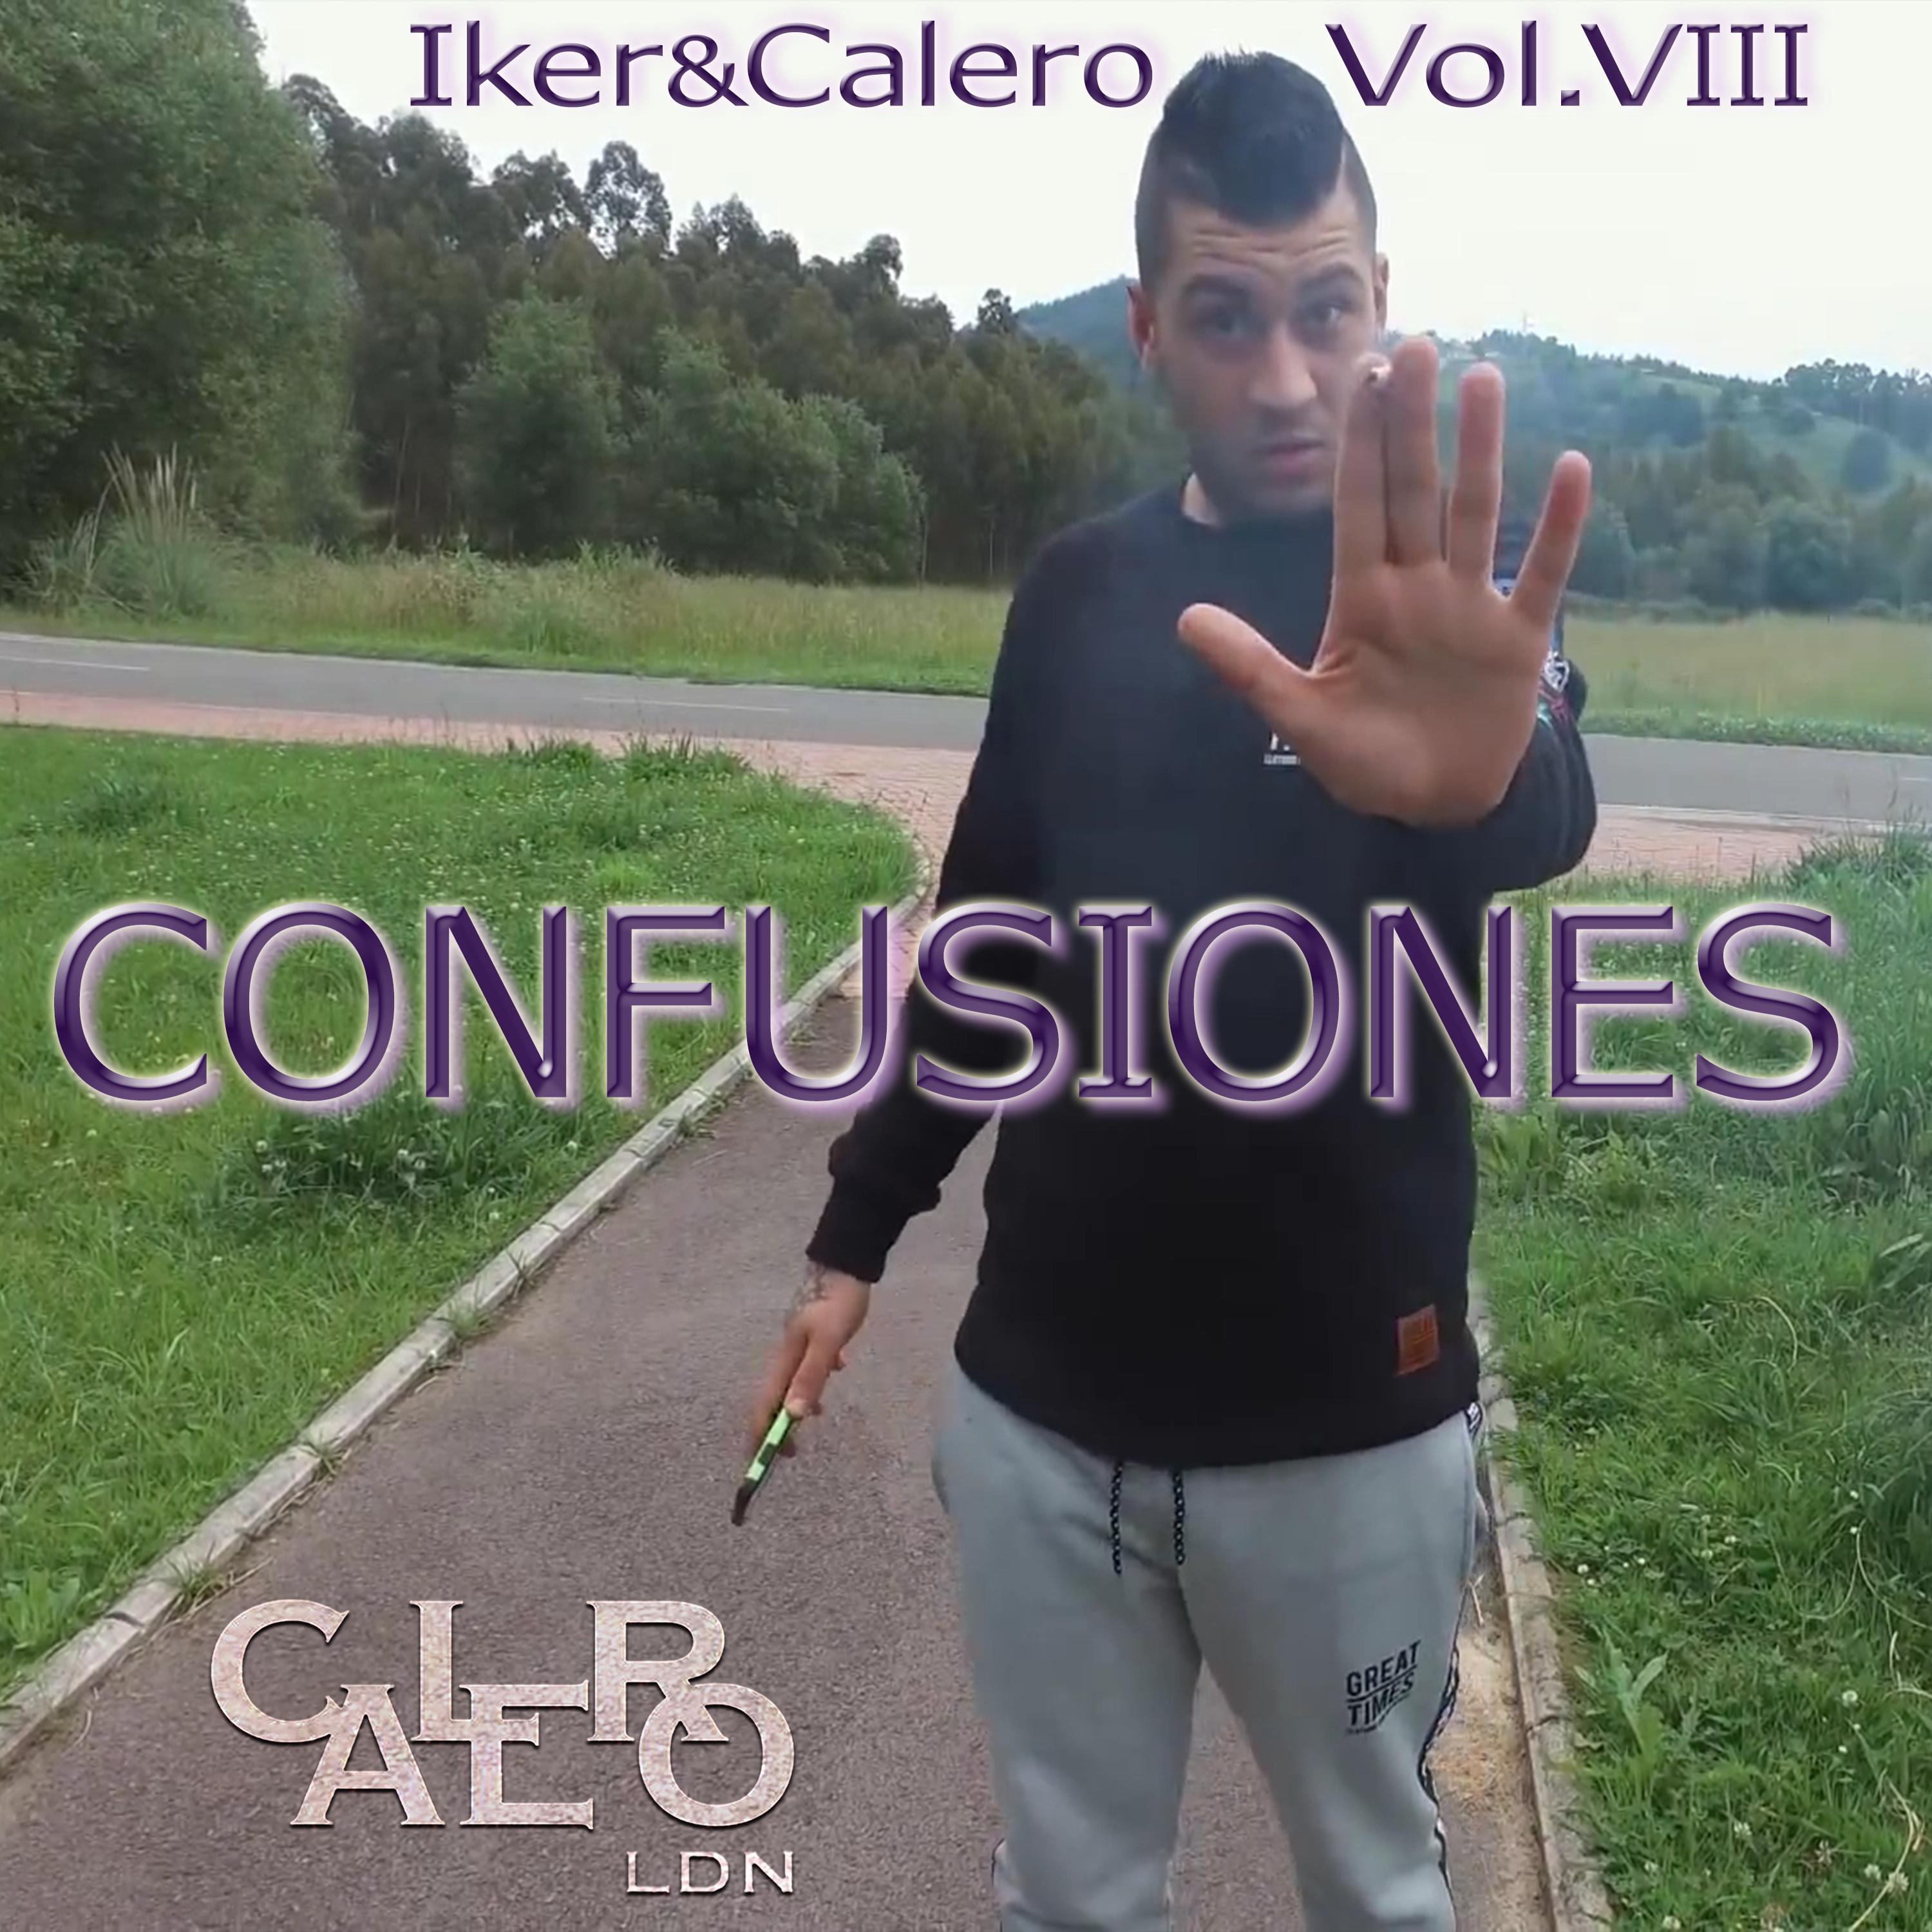 Confusiones (Iker&Calero) [Vol. VIII]